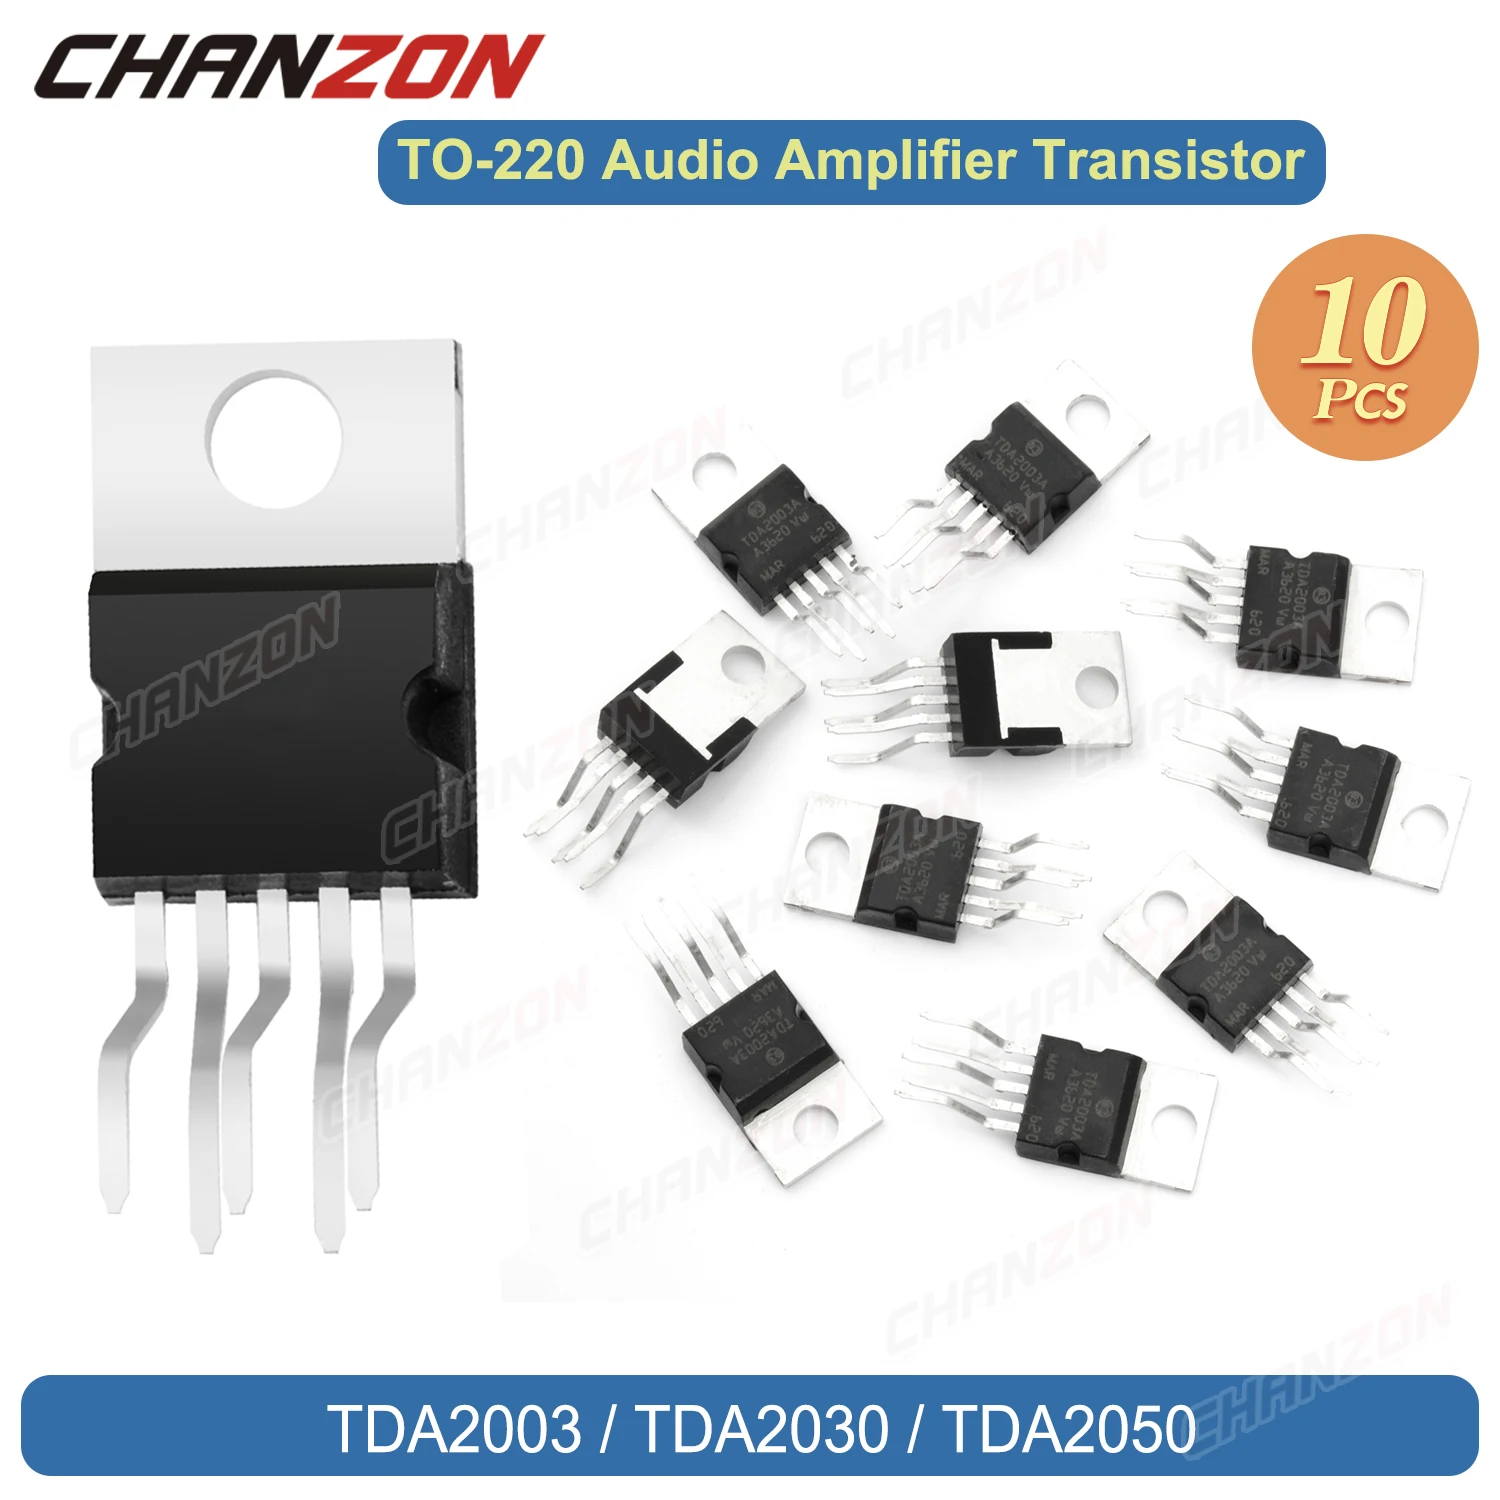 

Original 10Pcs Tda2030 Tda2030A Audio Amplifier Short-Circu Tda2003A Tda2050A Tda2003 Tda2050 to-220 High Quality Transistor BJT